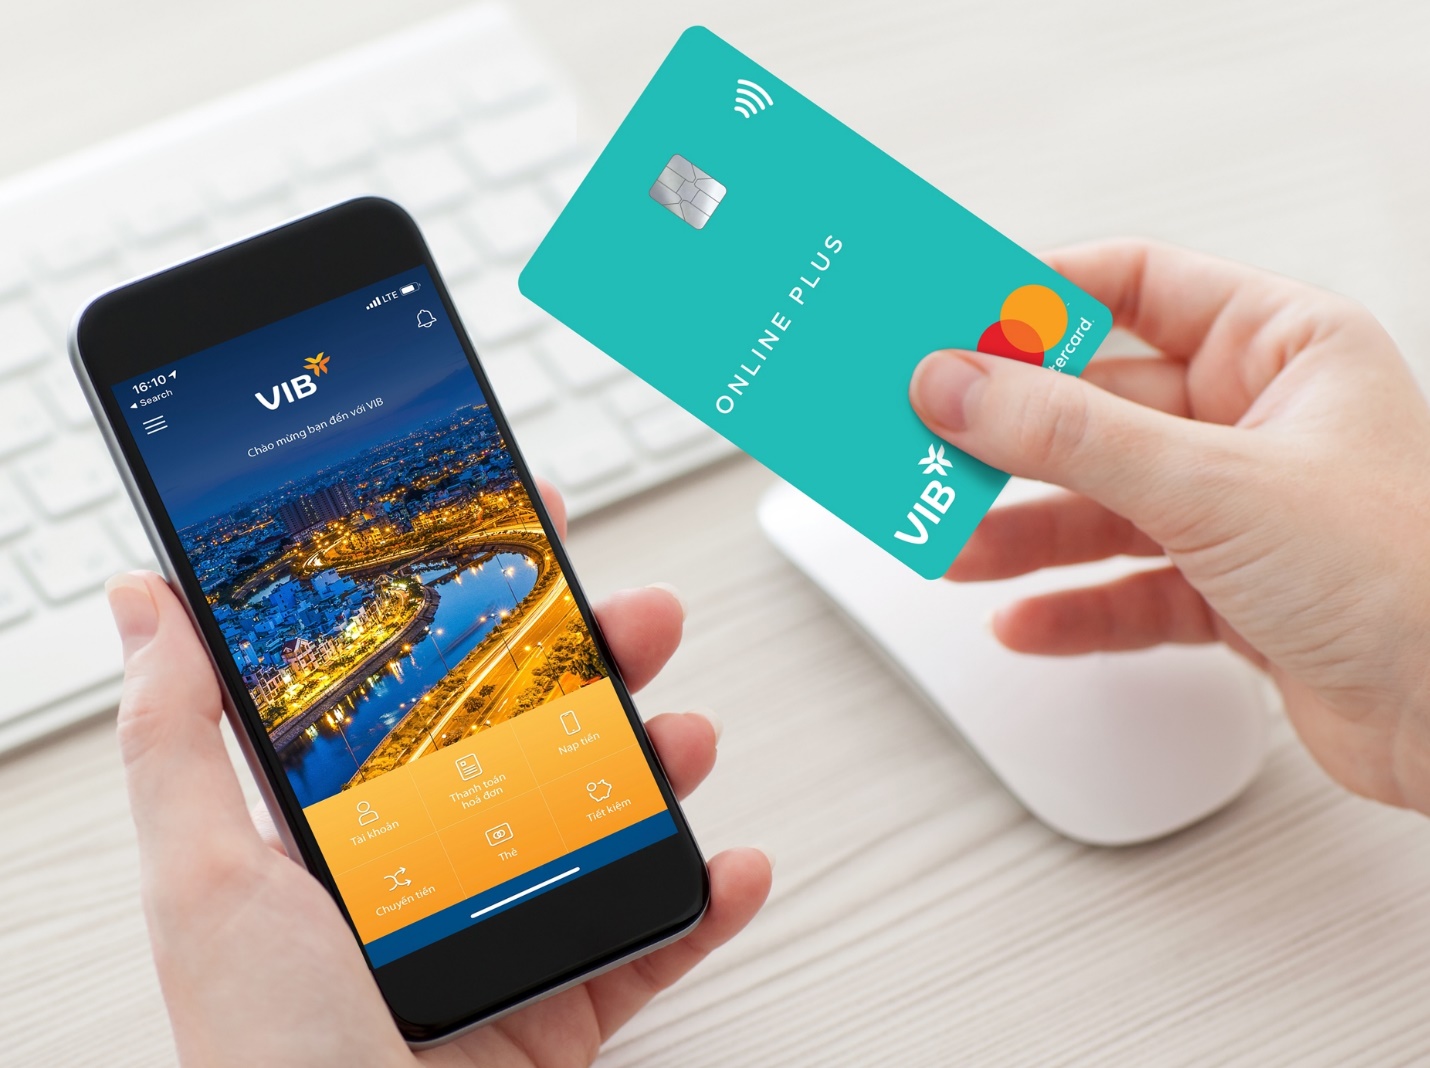 Thẻ tín dụng VIB Online Plus được thiết kế dành riêng cho người dùng thế hệ mới thời thượng và thông thái